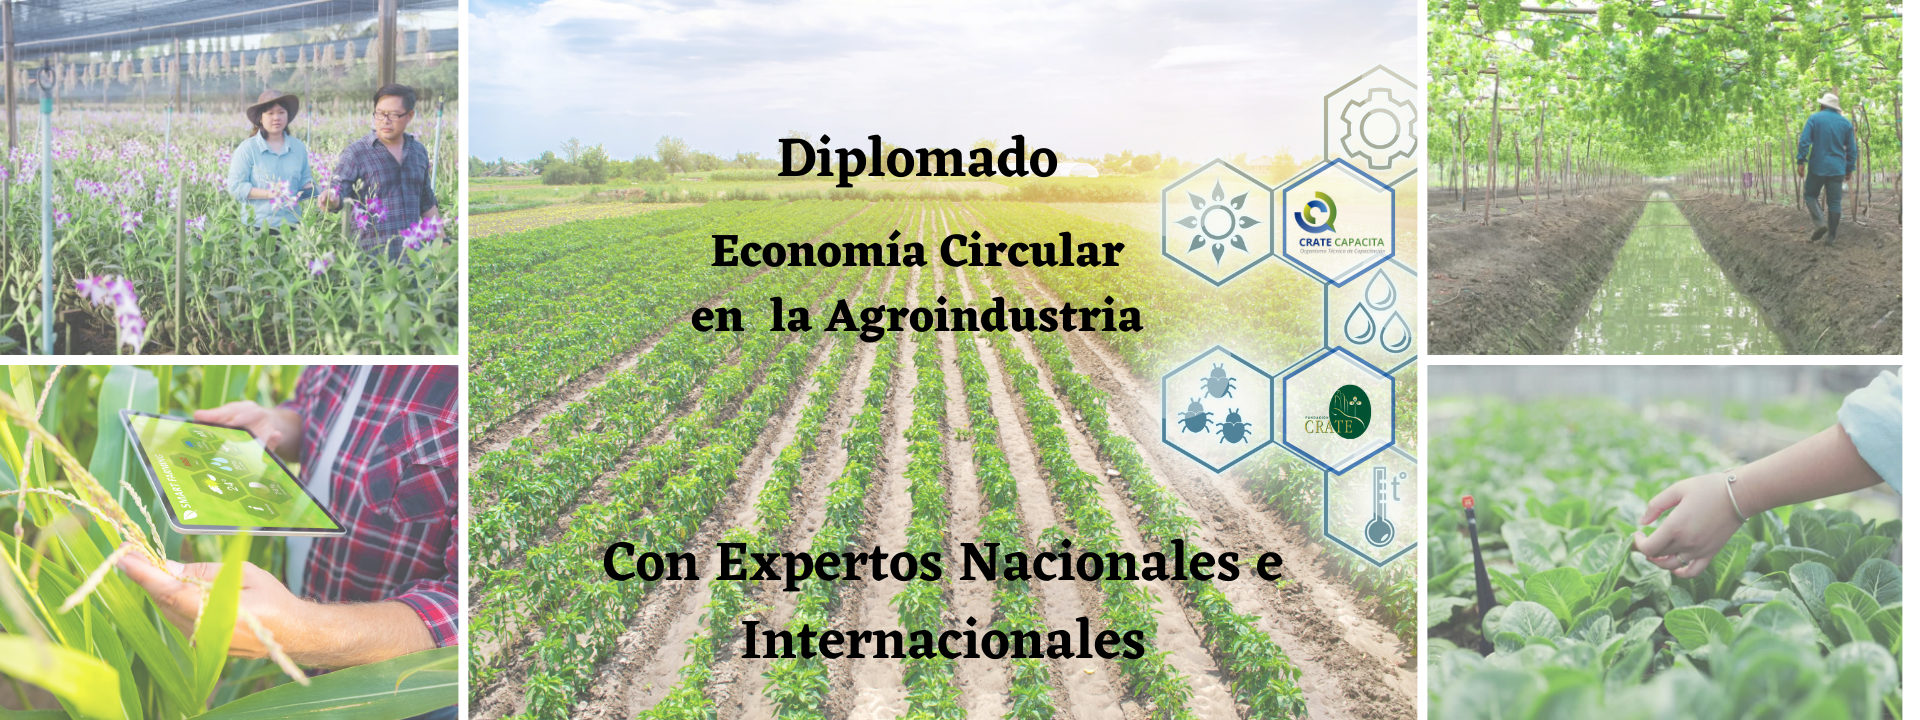 Copia de Diplomado Economía Circular en la Agroindustria